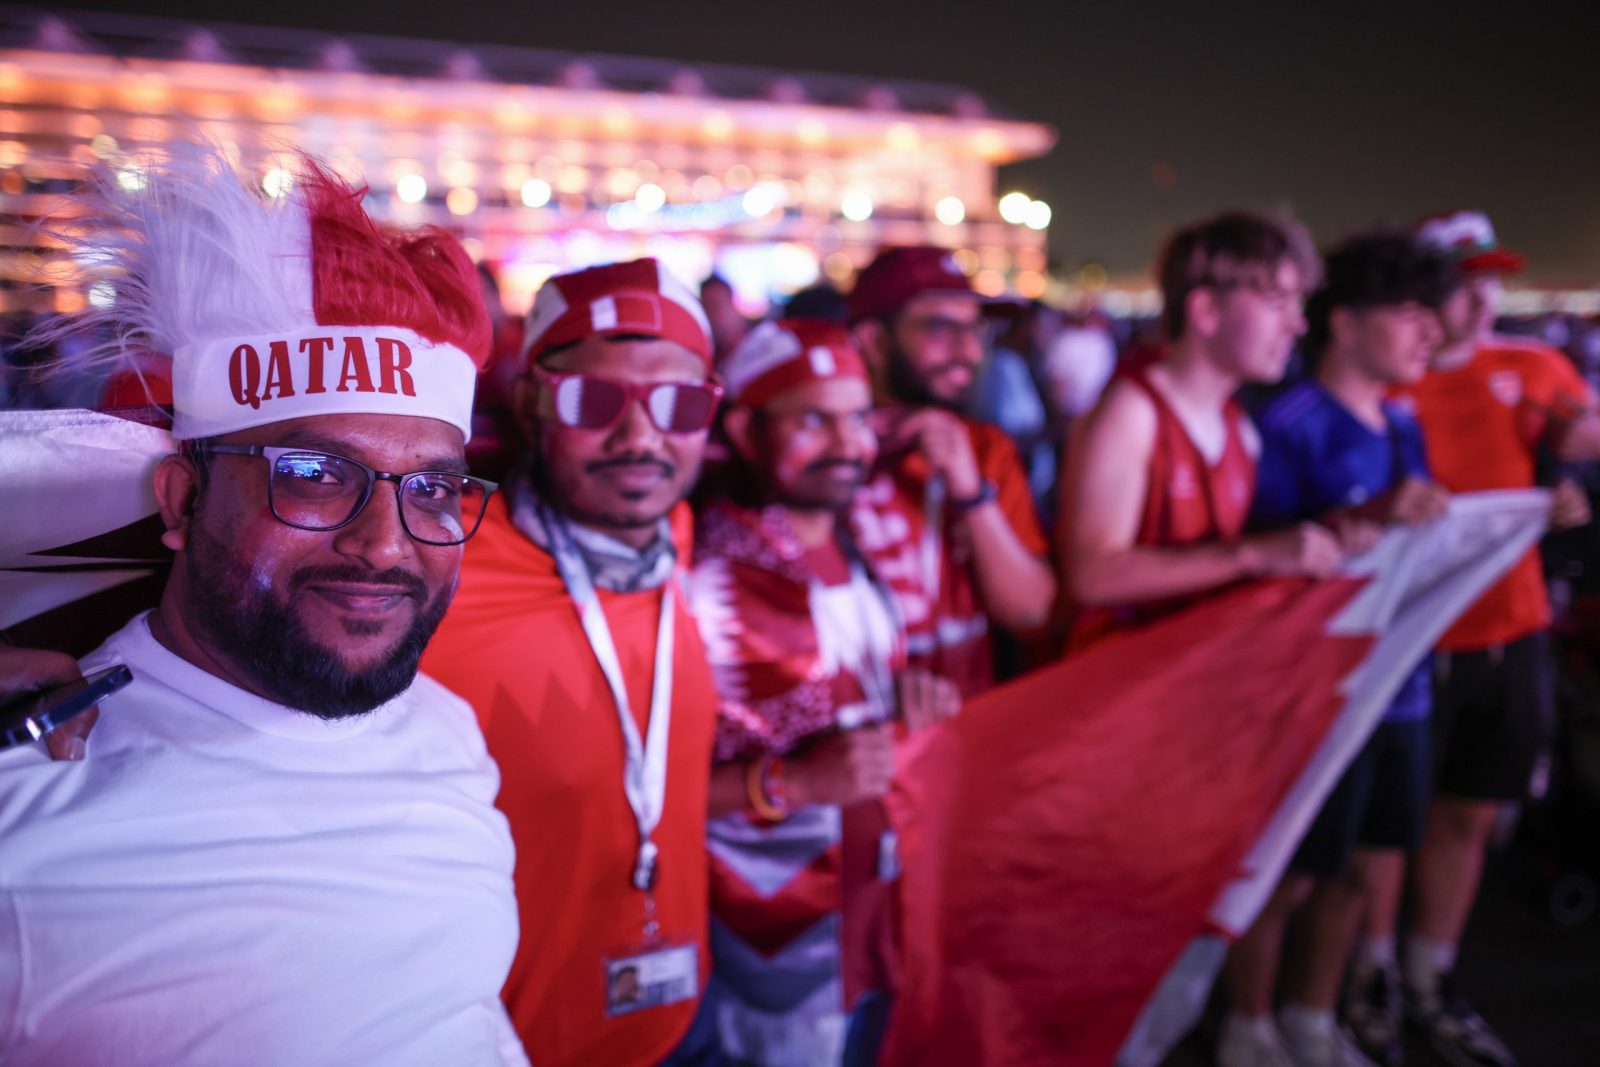 Doha, 20.11.2022 - Mnoštvo ljudi je pratilo svečanost otvaranja Svjetskog nogometnog prvenstva i prve utakmice između Katra i Ekvadora na FIFA Fan Festivalu u Dohi.
foto HINA/ Damir SENČAR/ ds